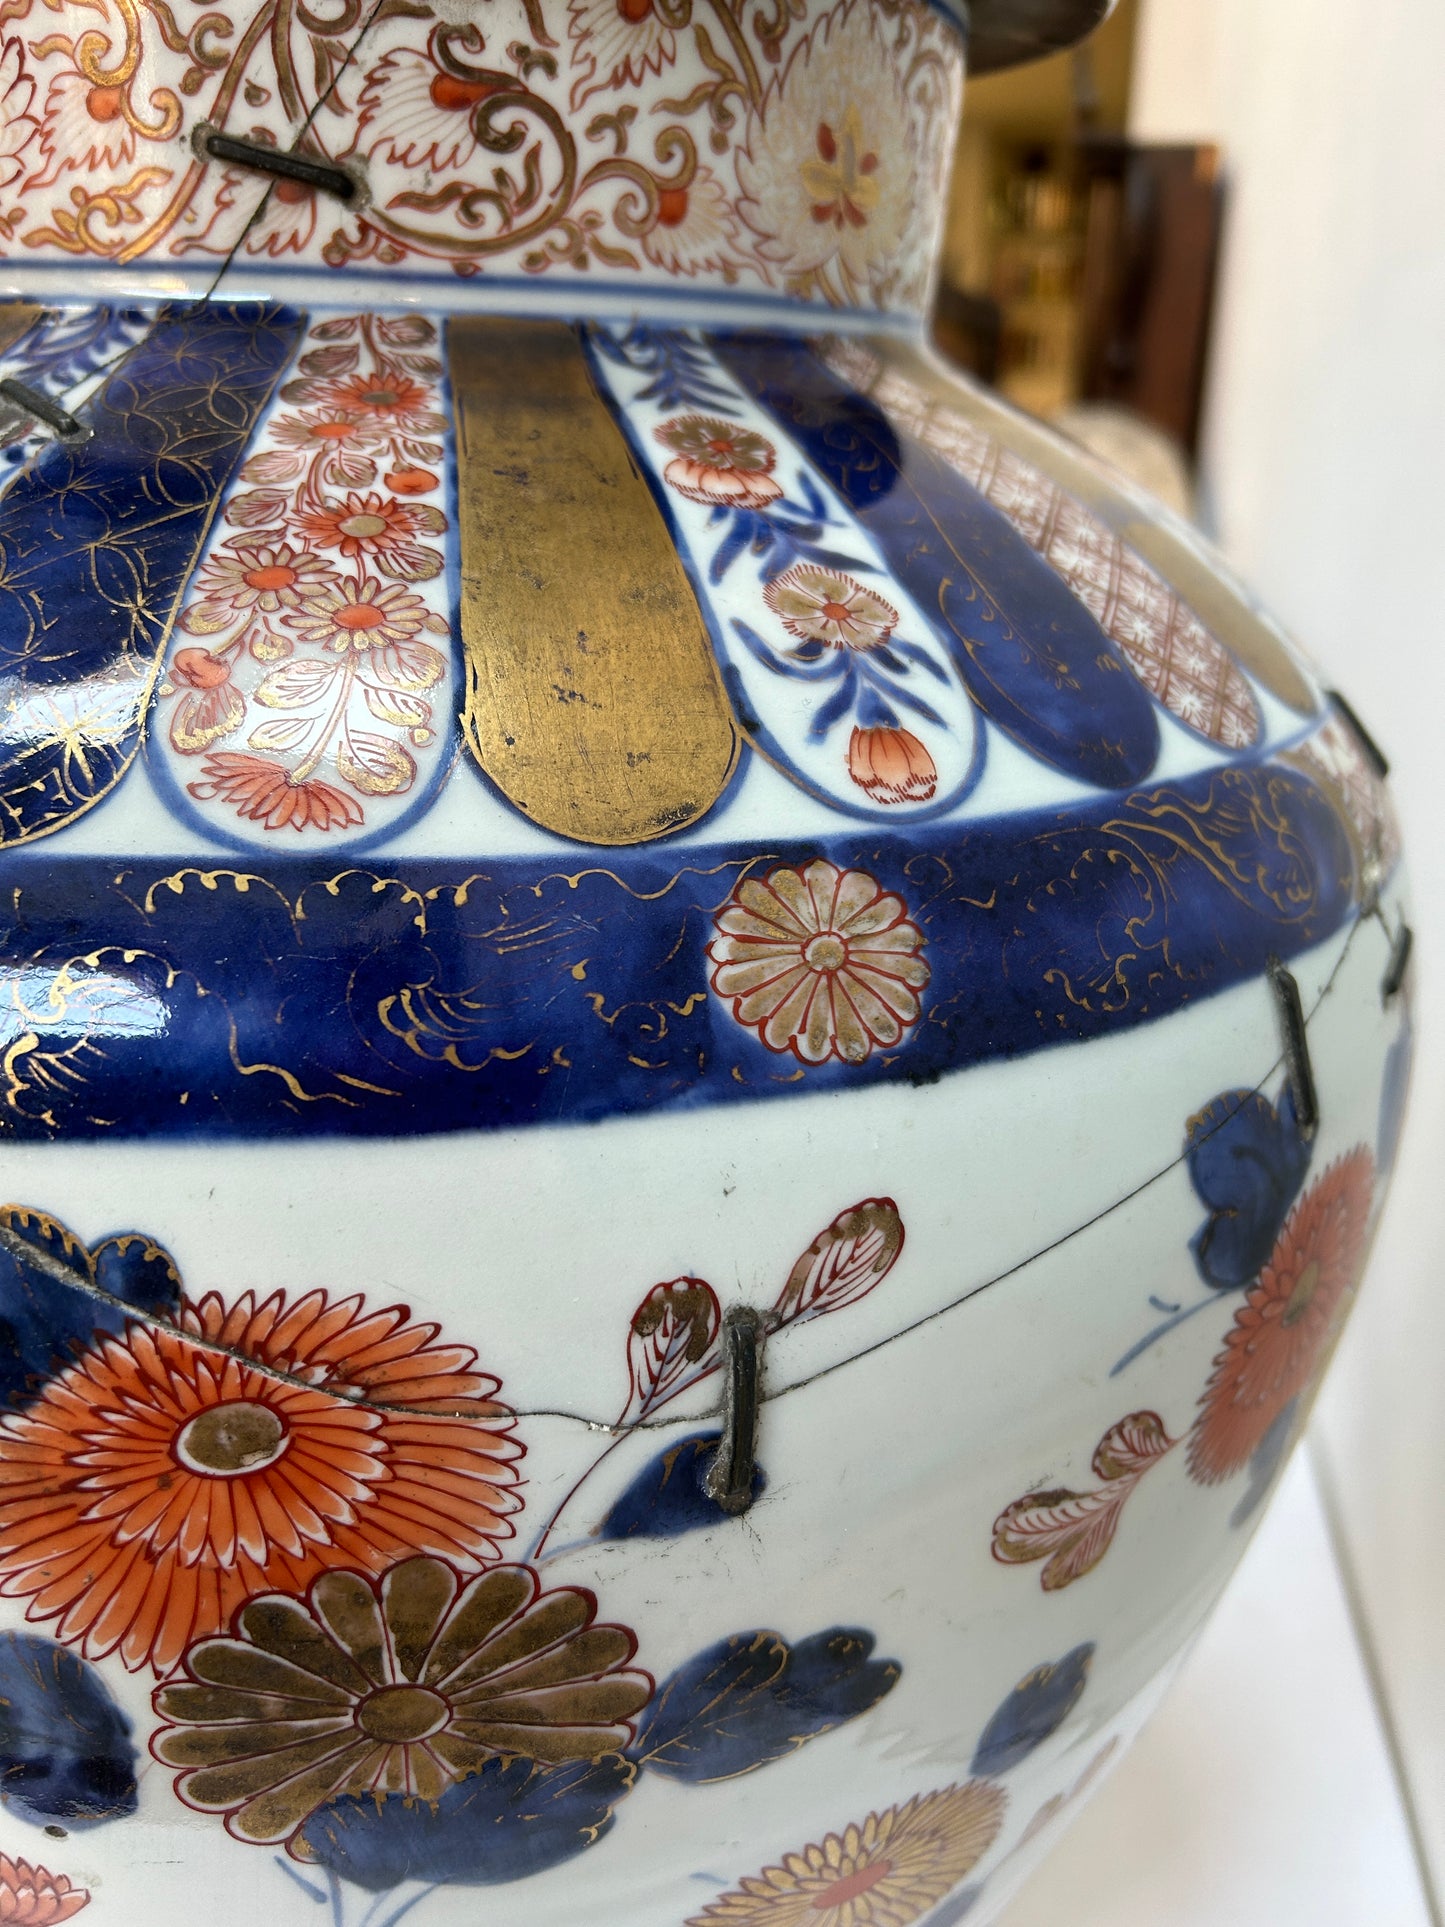 Grande vaso Imari giapponese con coperchio, periodo Edo (1736-1795)